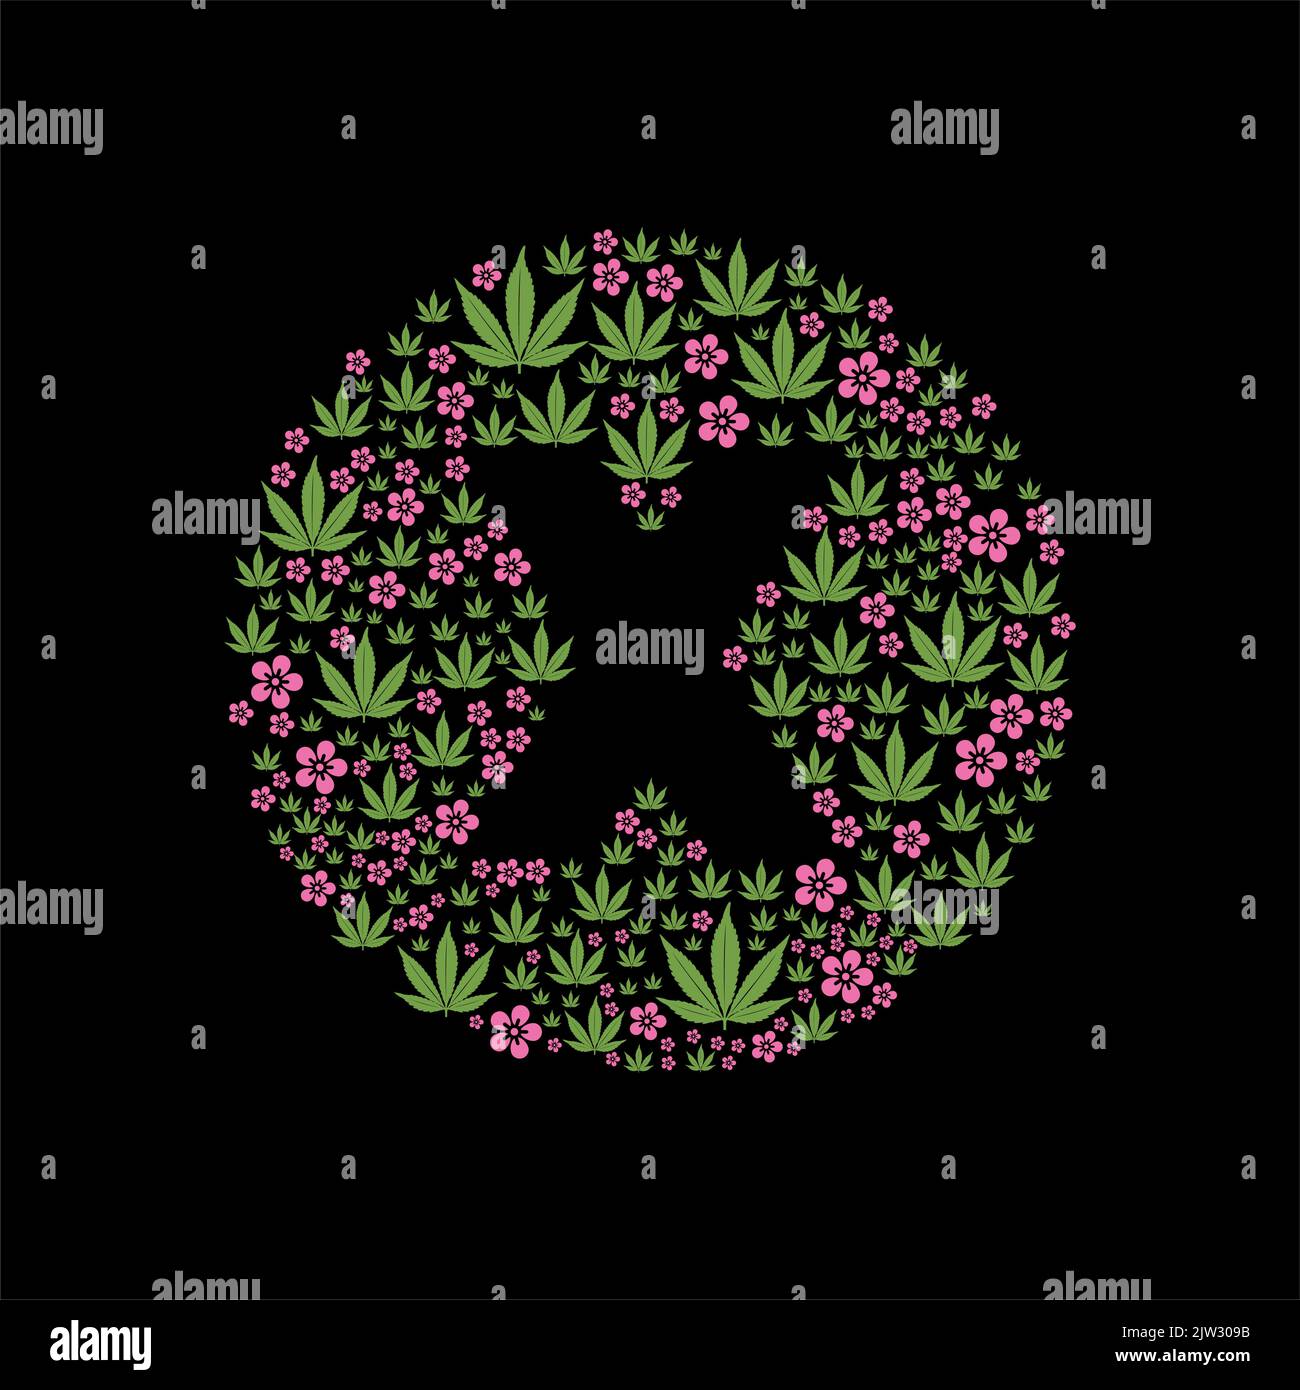 X und Marihuana Blatt Blume für unbekannte chemische Verbindung Symbol-Logo-Design Stock Vektor